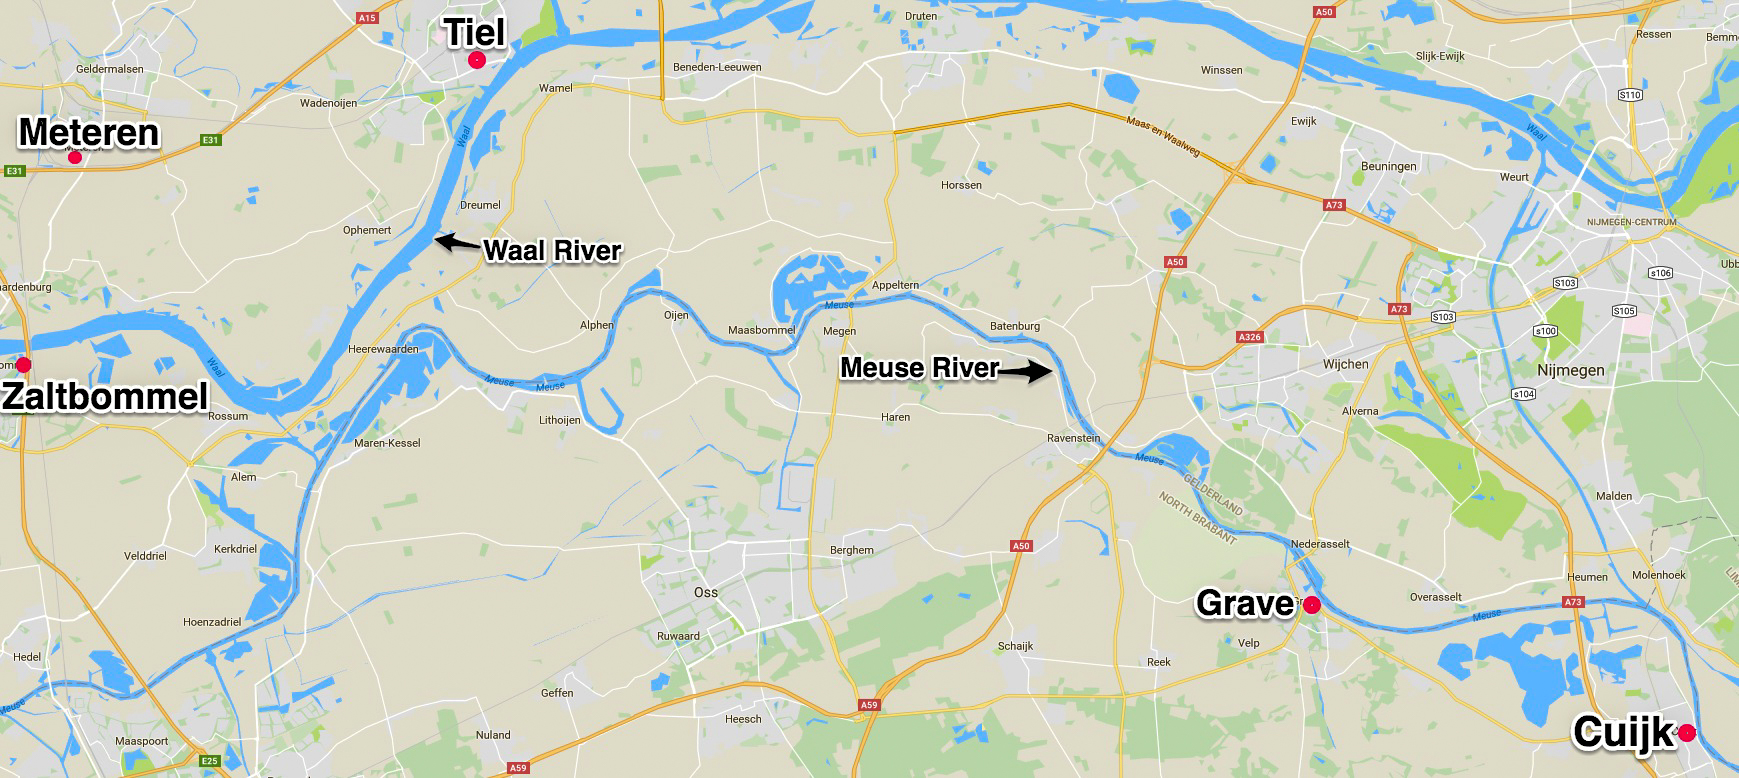 Map showing Meteren, Tiel, Zaltbommel, Grave and Cuijk, Netherlands